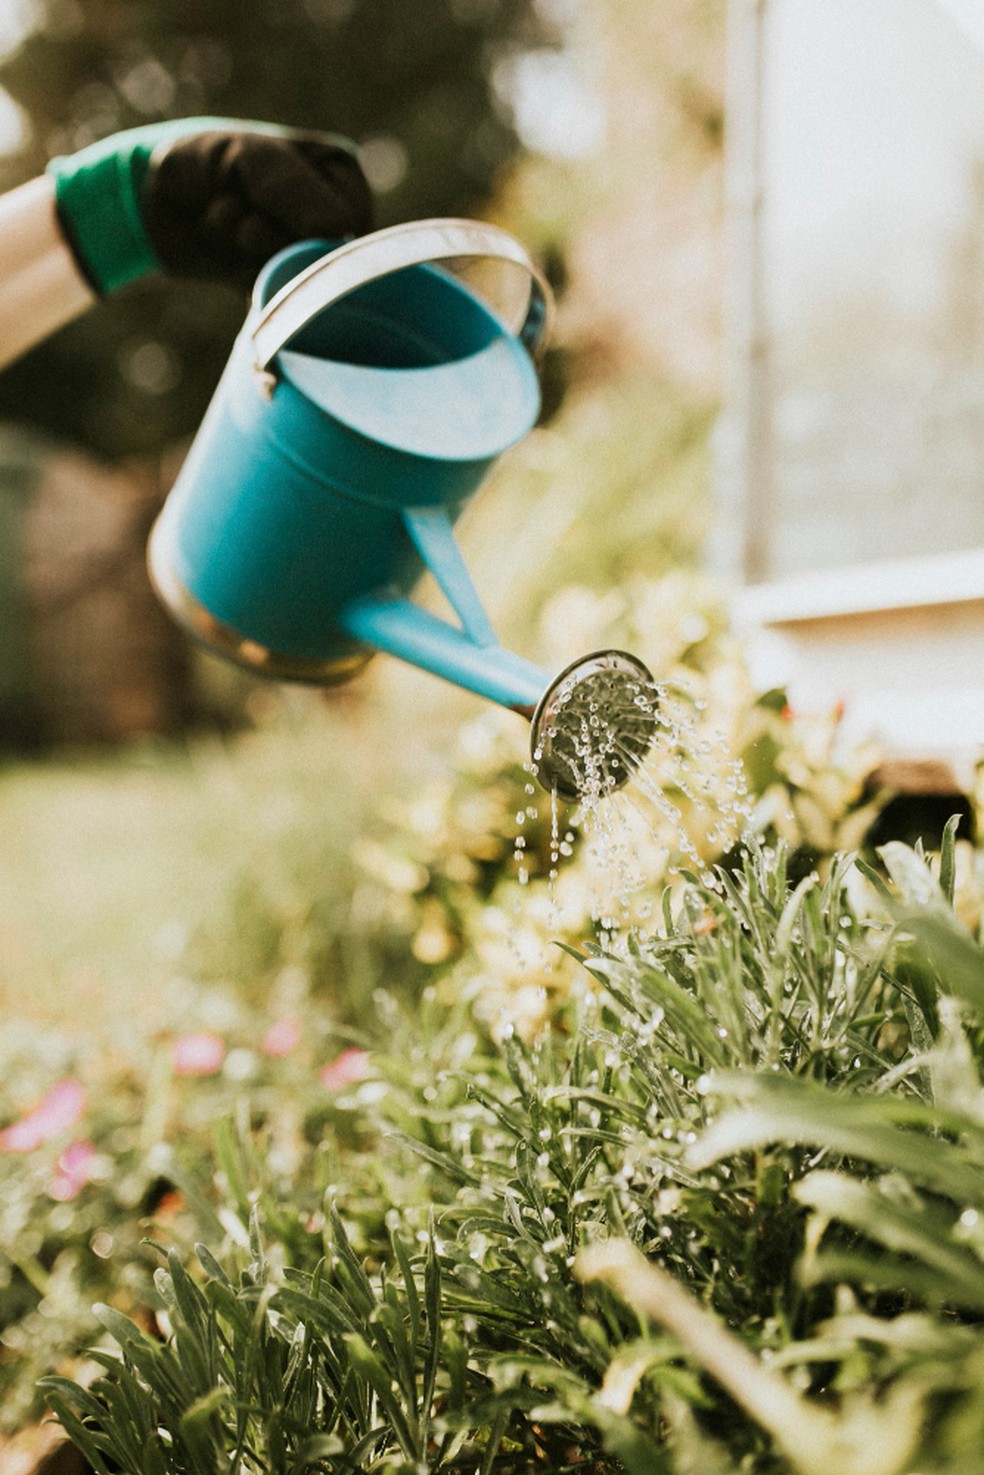 O cuidado com as plantas, incluindo rega e adubação, pode trazer uma motivação para o dia a dia — Foto: Freepik / Creative Commons